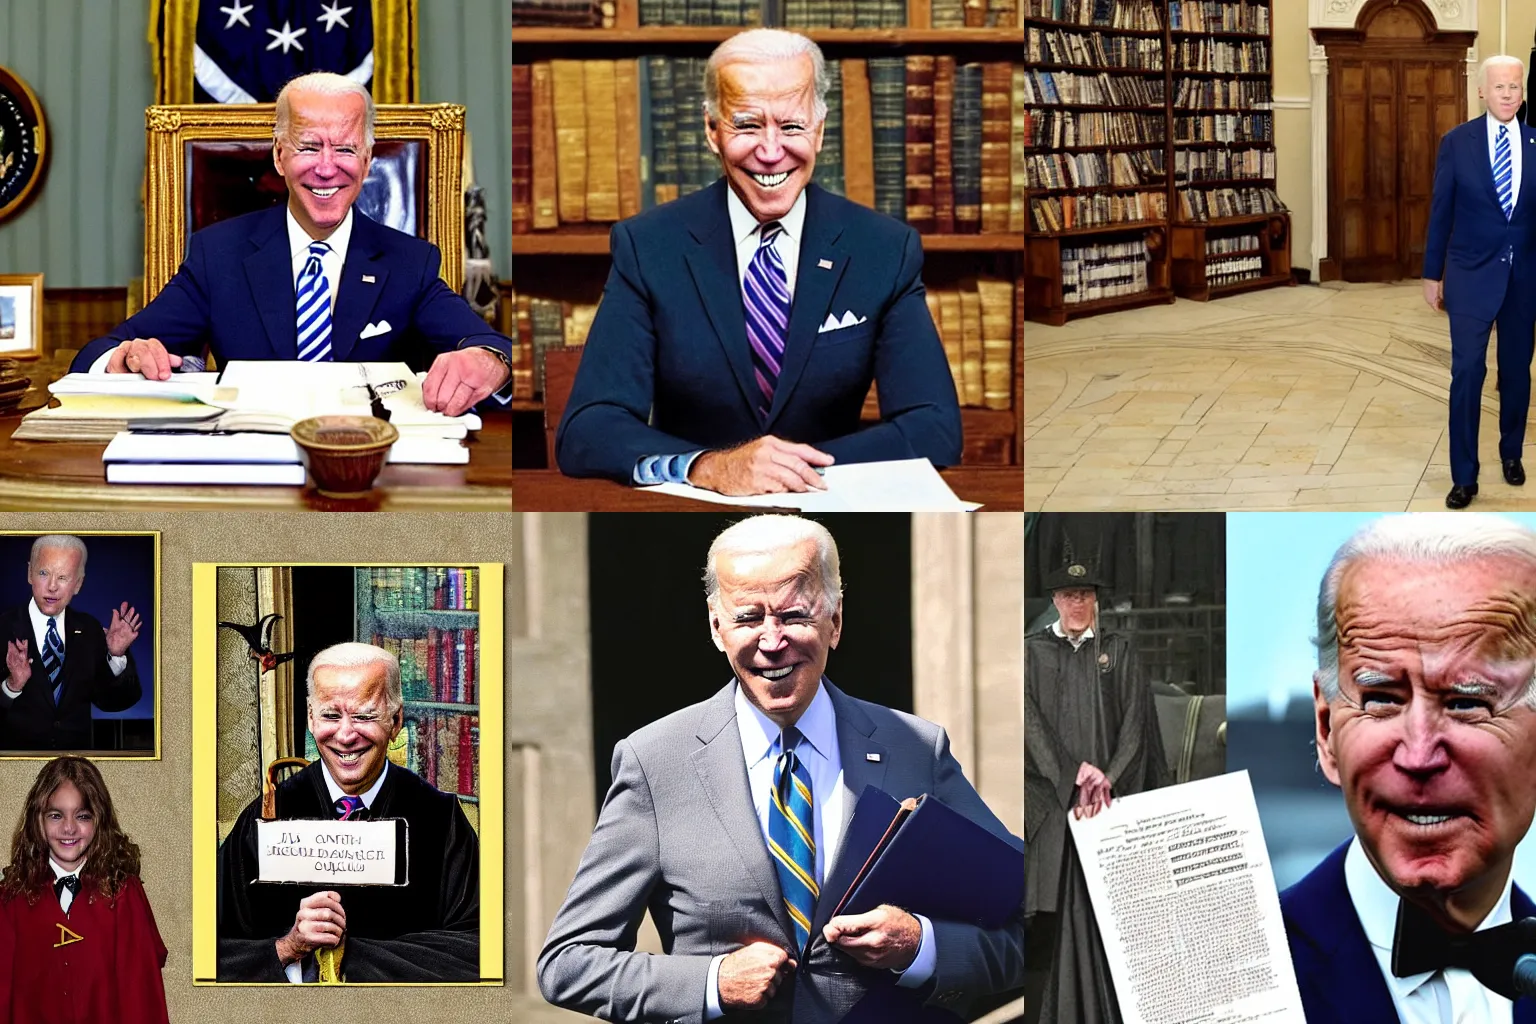 Prompt: Joe Biden attending Hogwarts school of witchcraft and wizardry